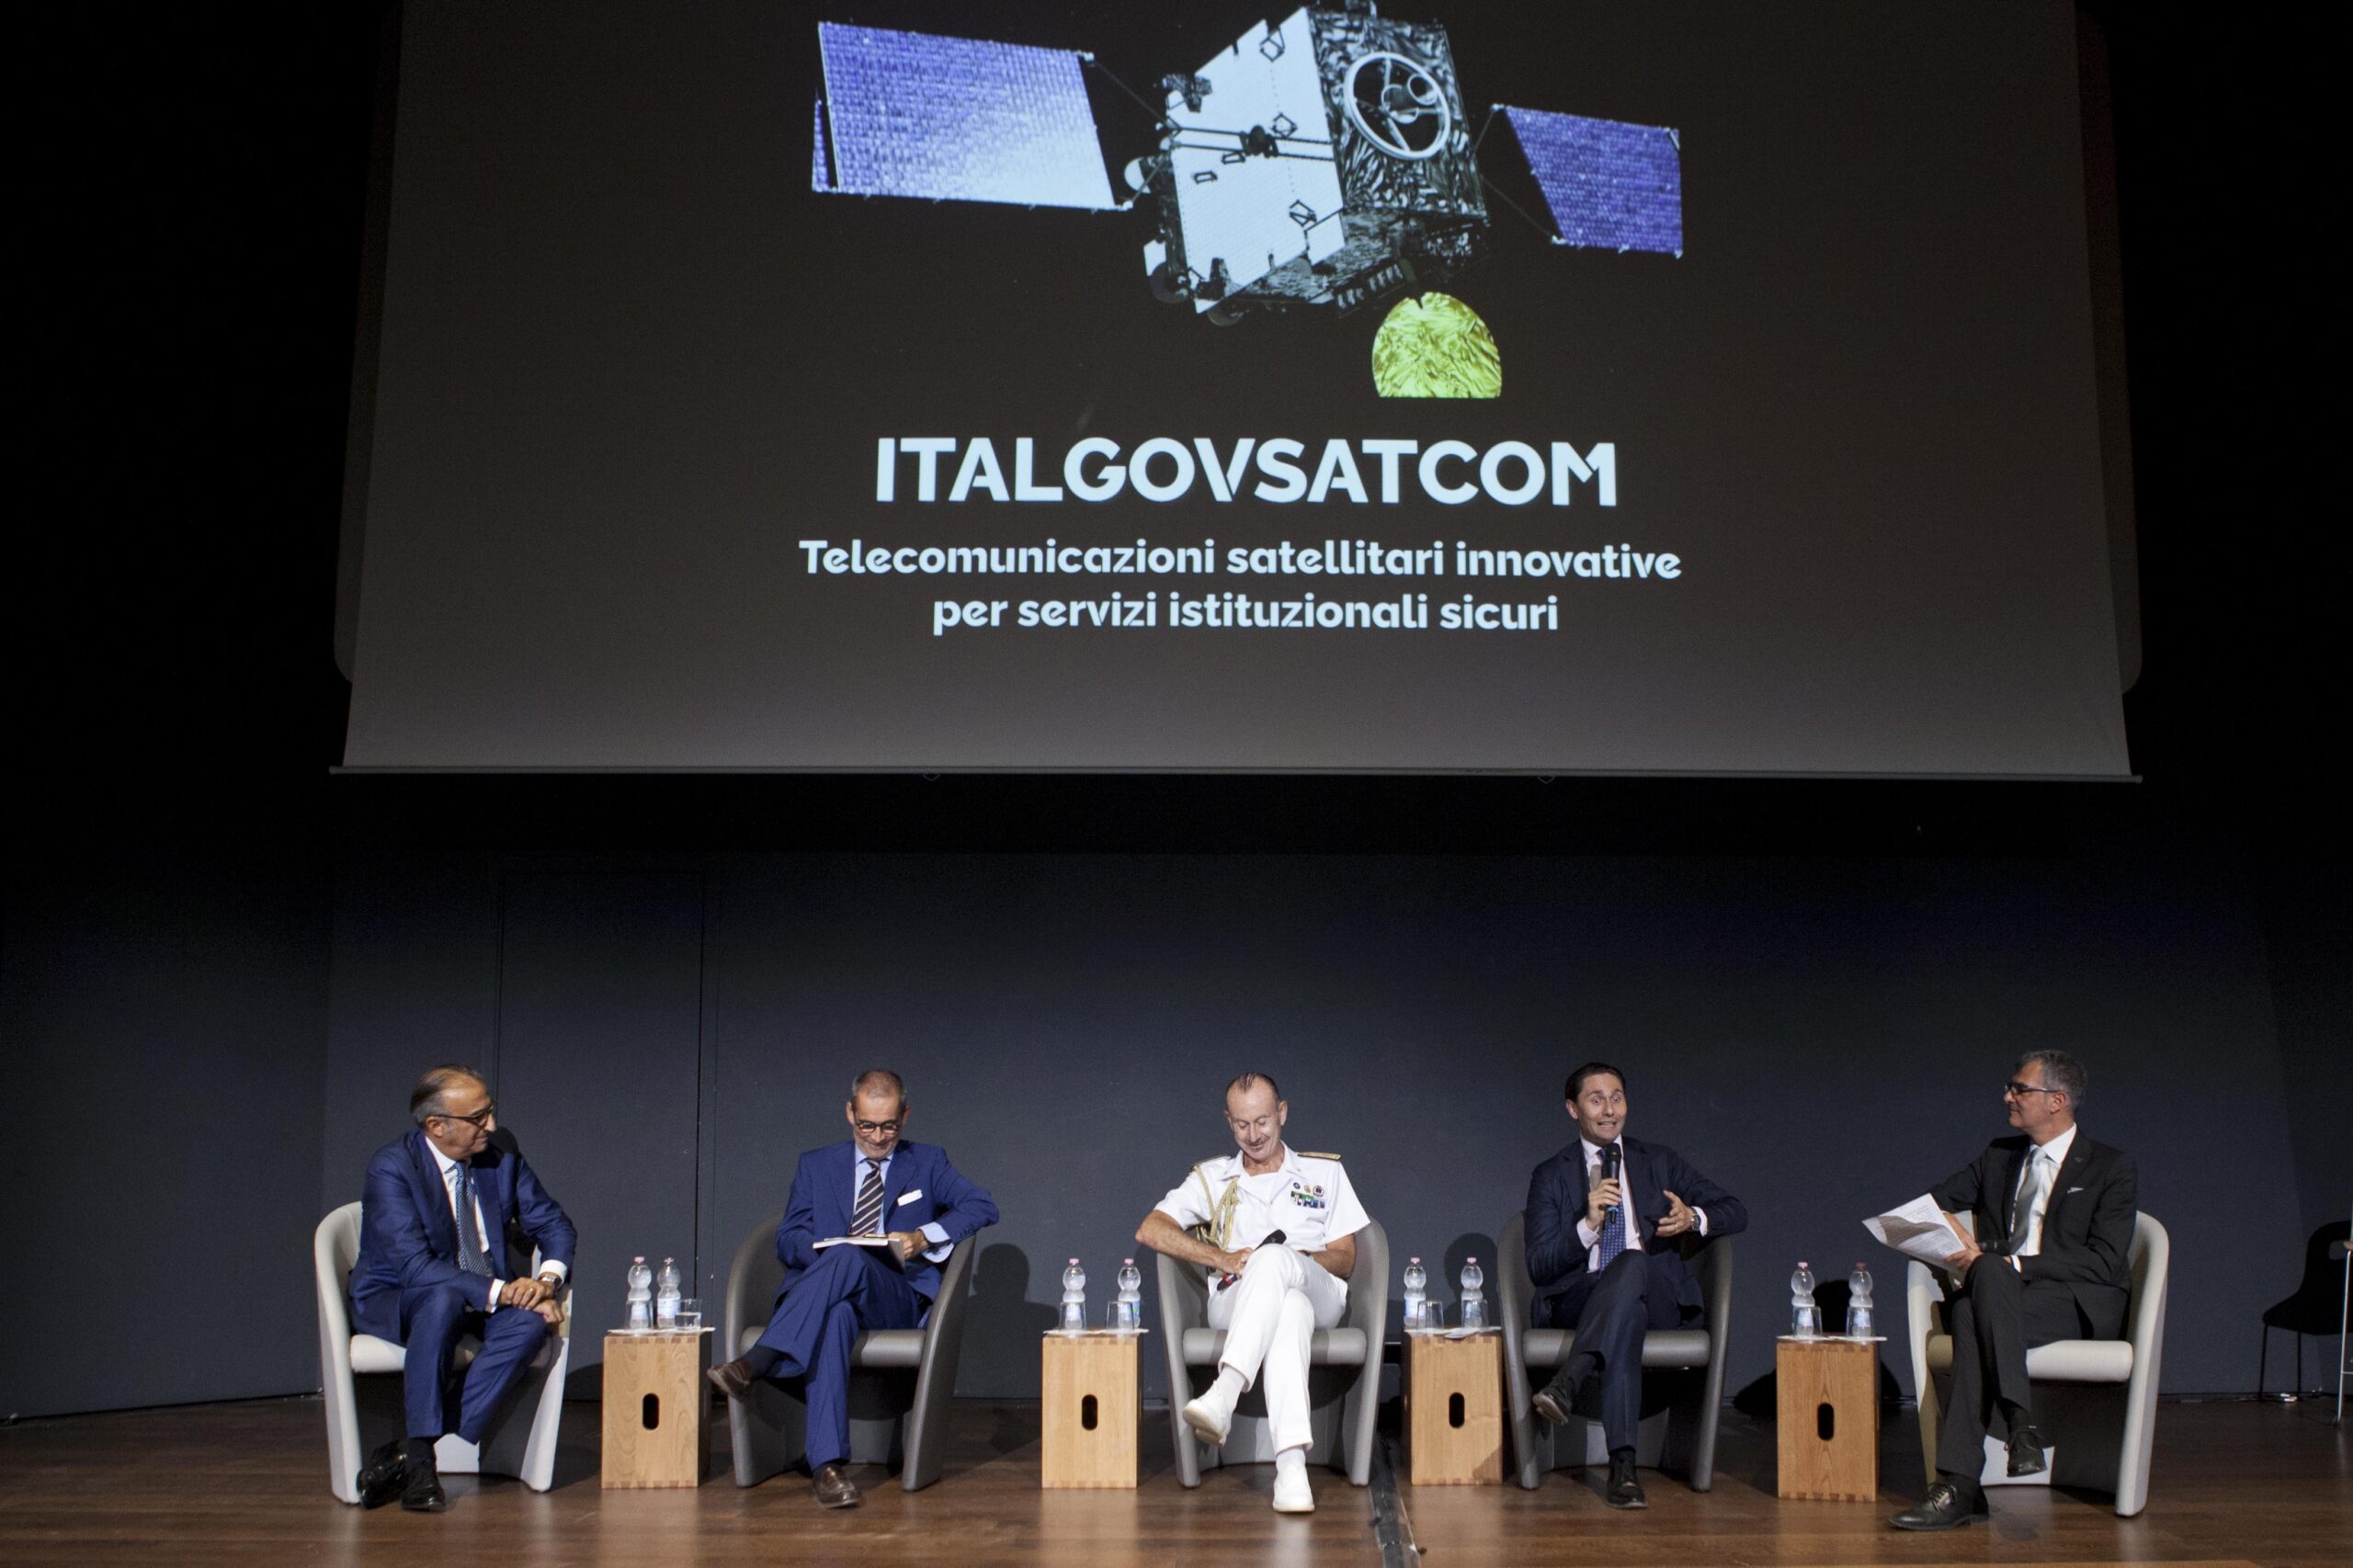 ASI - Space Economy, al via la prima fase di Ital-GovSatCom